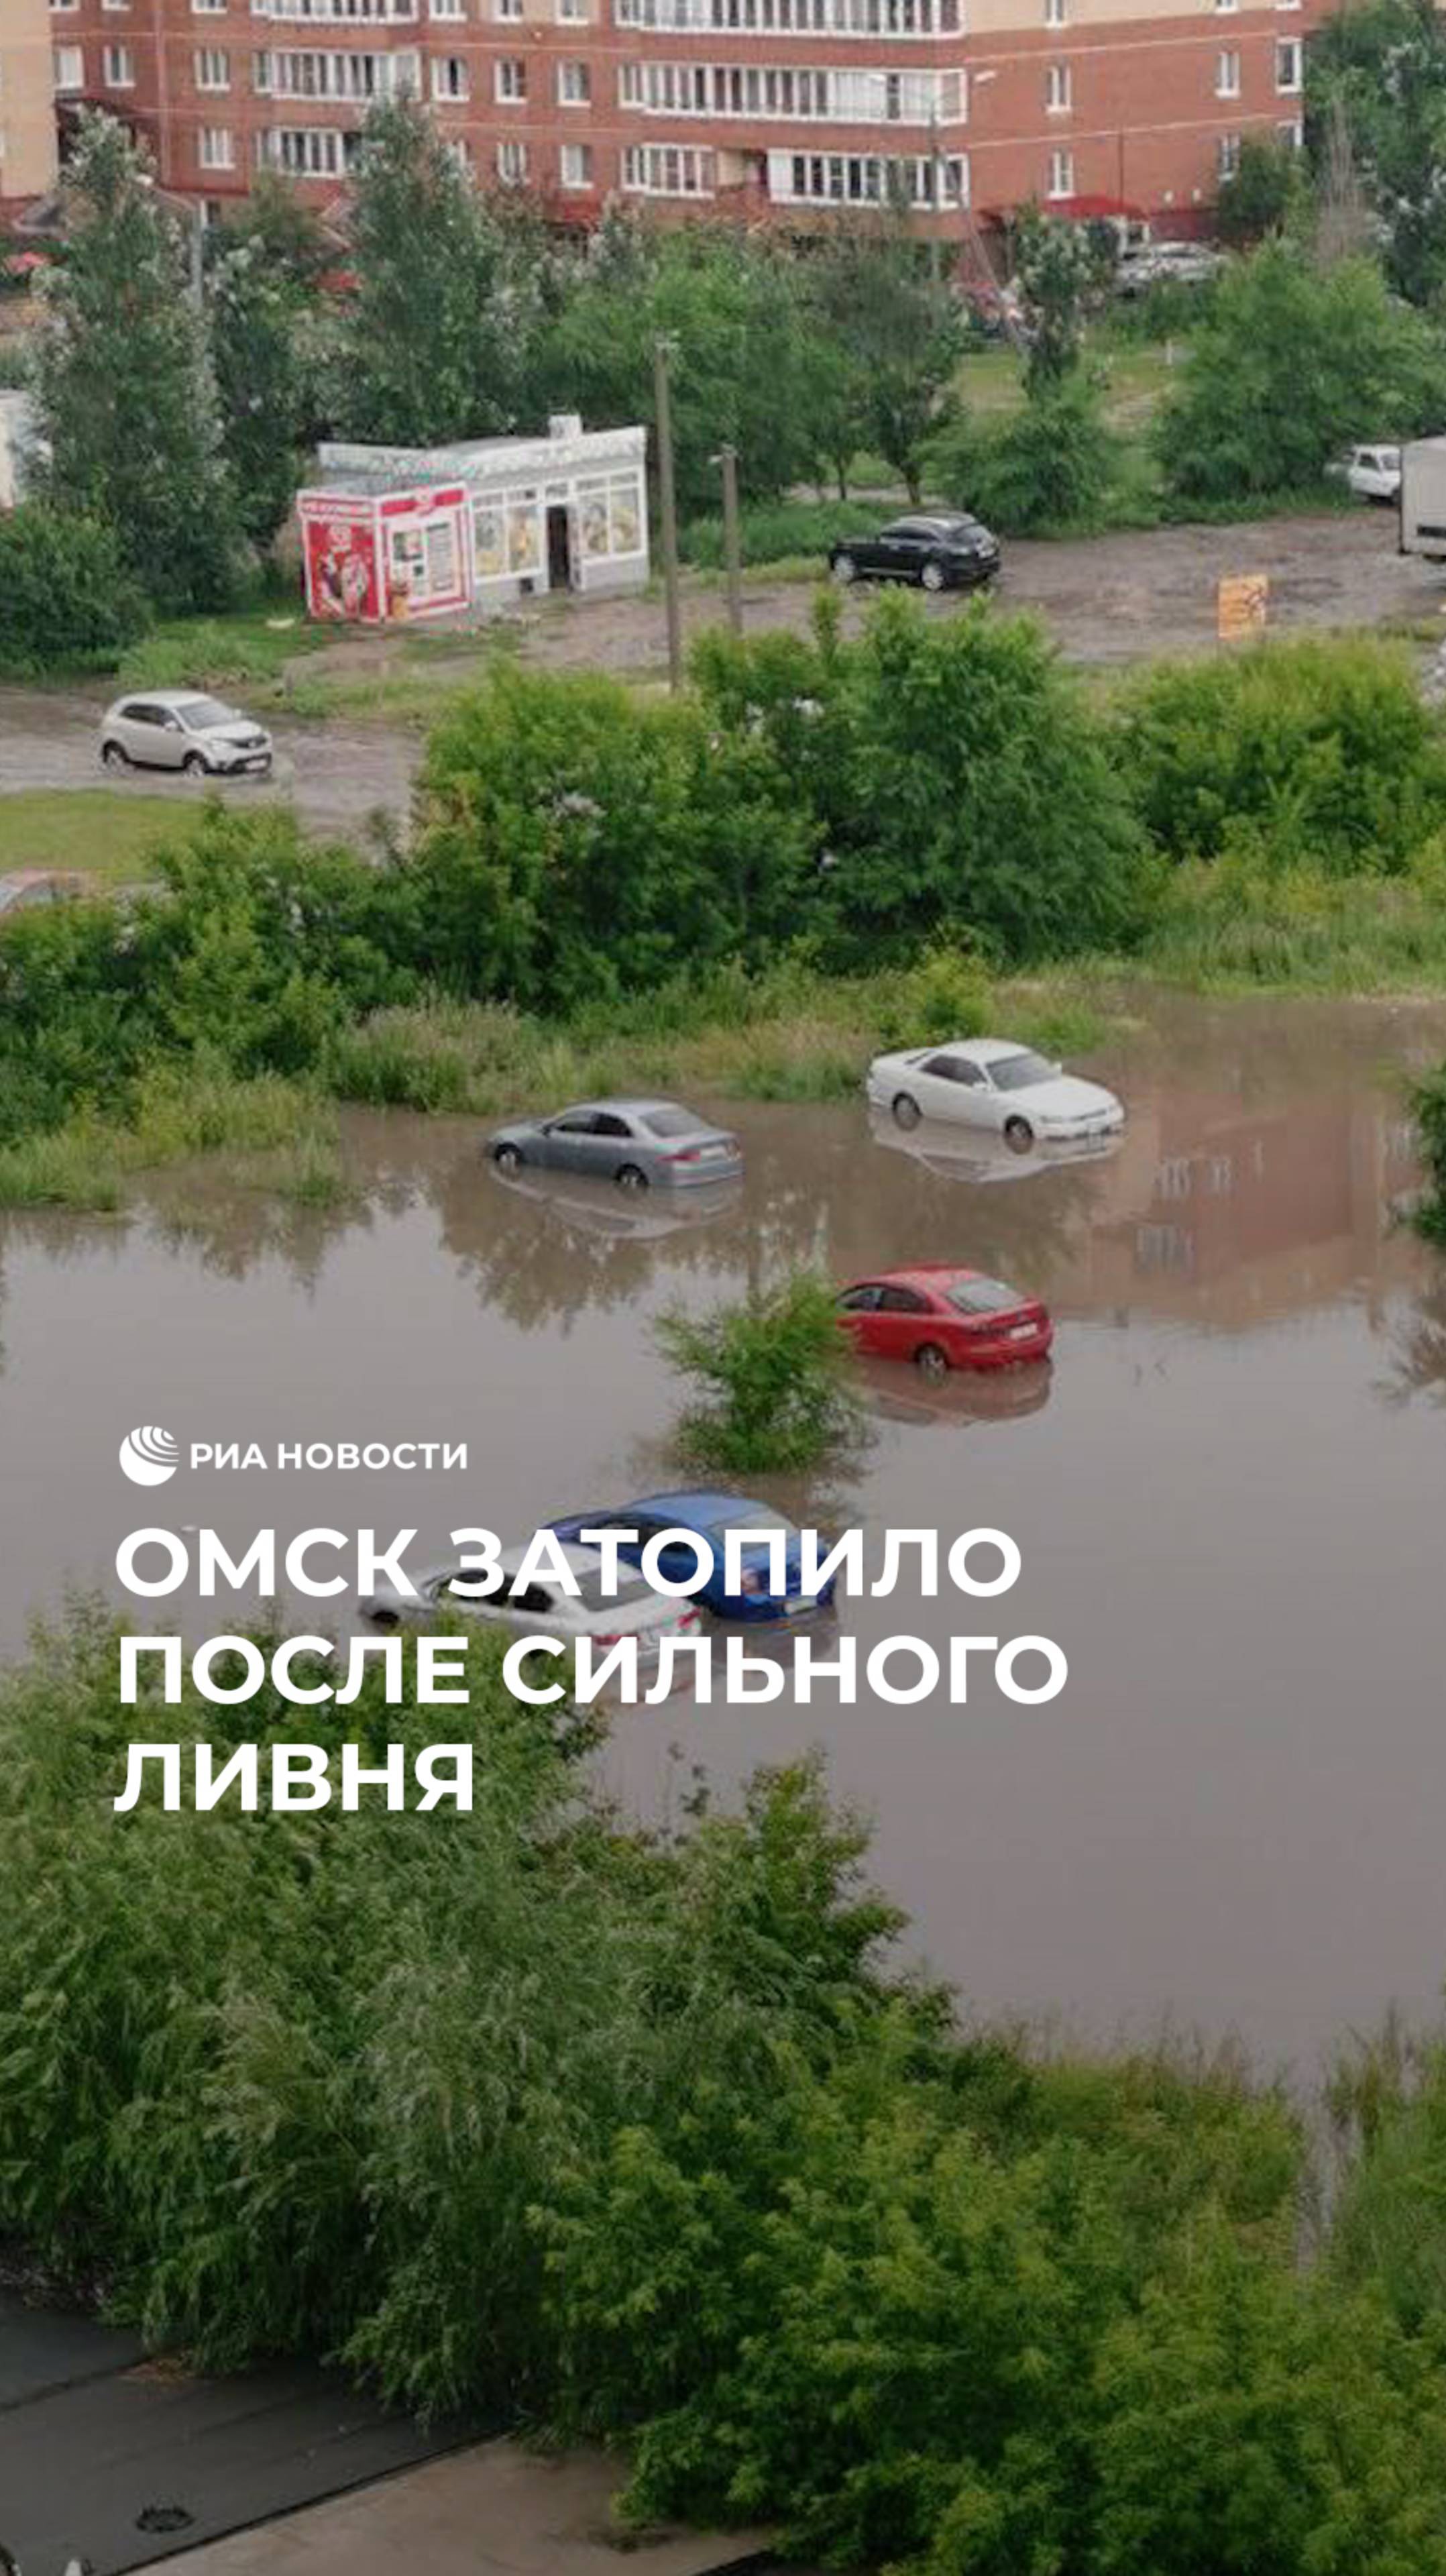 Омск затопило после сильного ливня